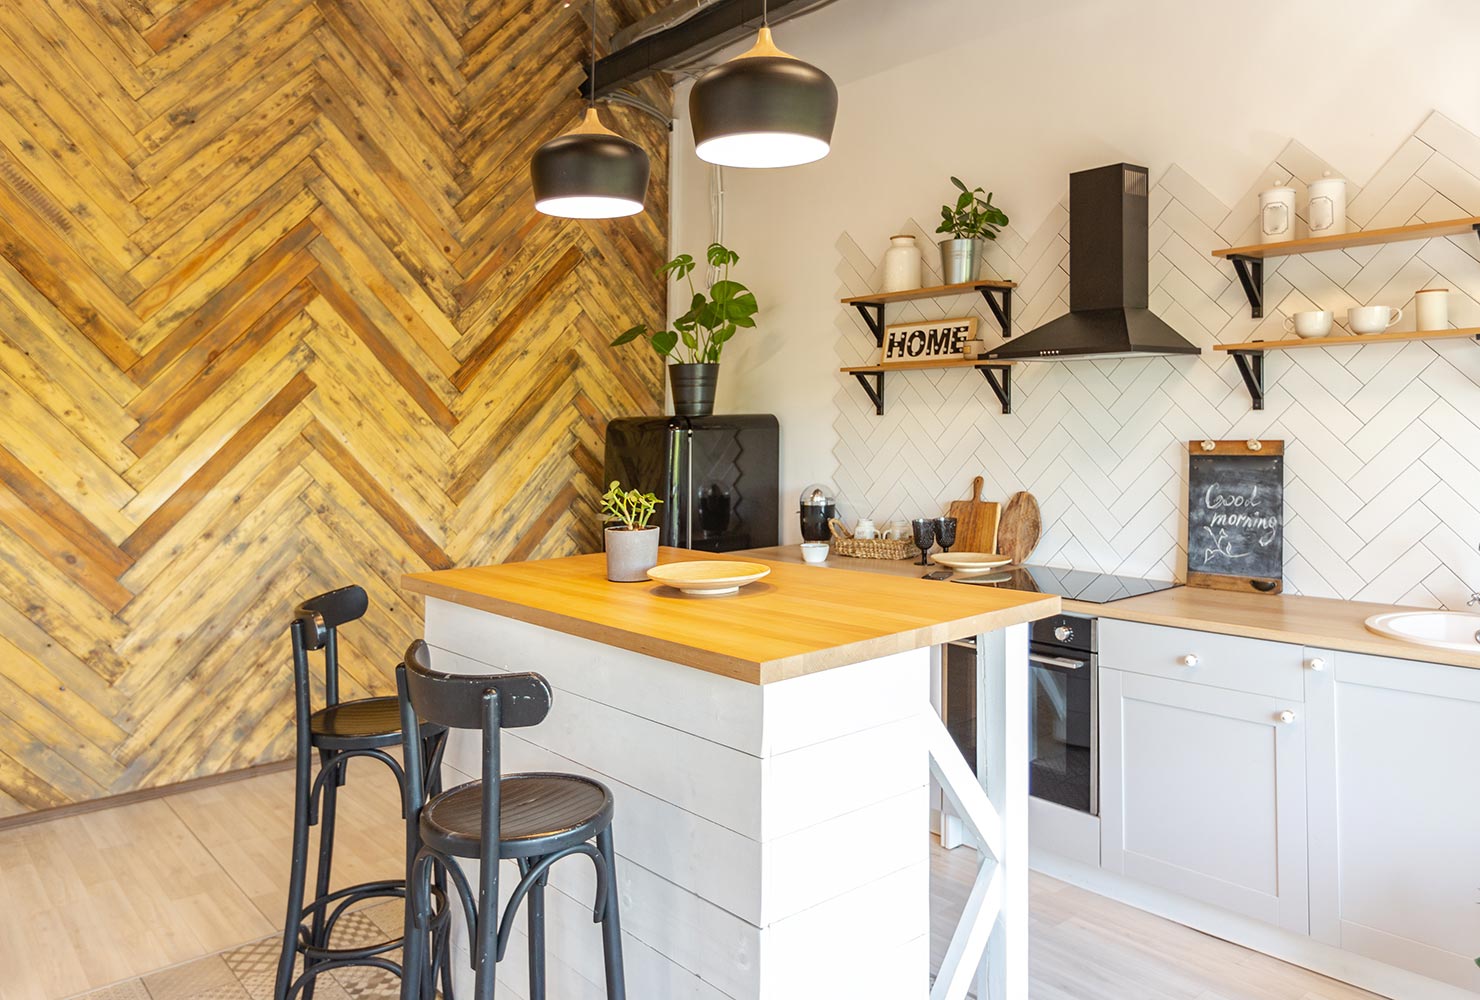 Holz als Wanddekoration in der Küche? Eine originelle Idee!